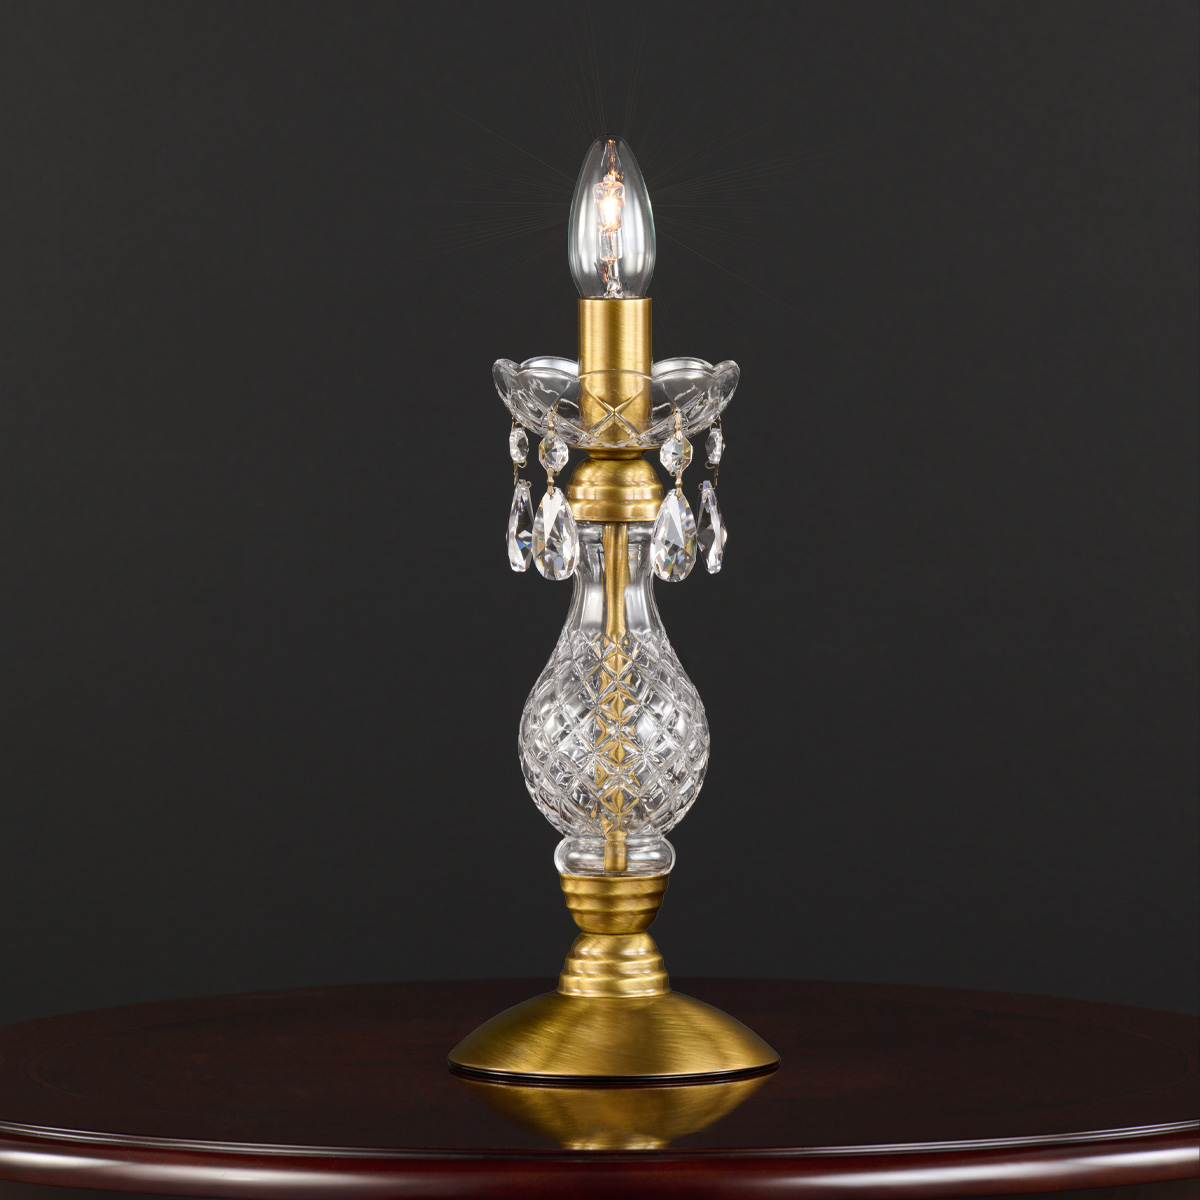 Οξειδωμένη ορειχάλκινη επιτραπέζια λάμπα ΒΕΡΓΙΝΑ oxidized brass table lamp with crystal accents